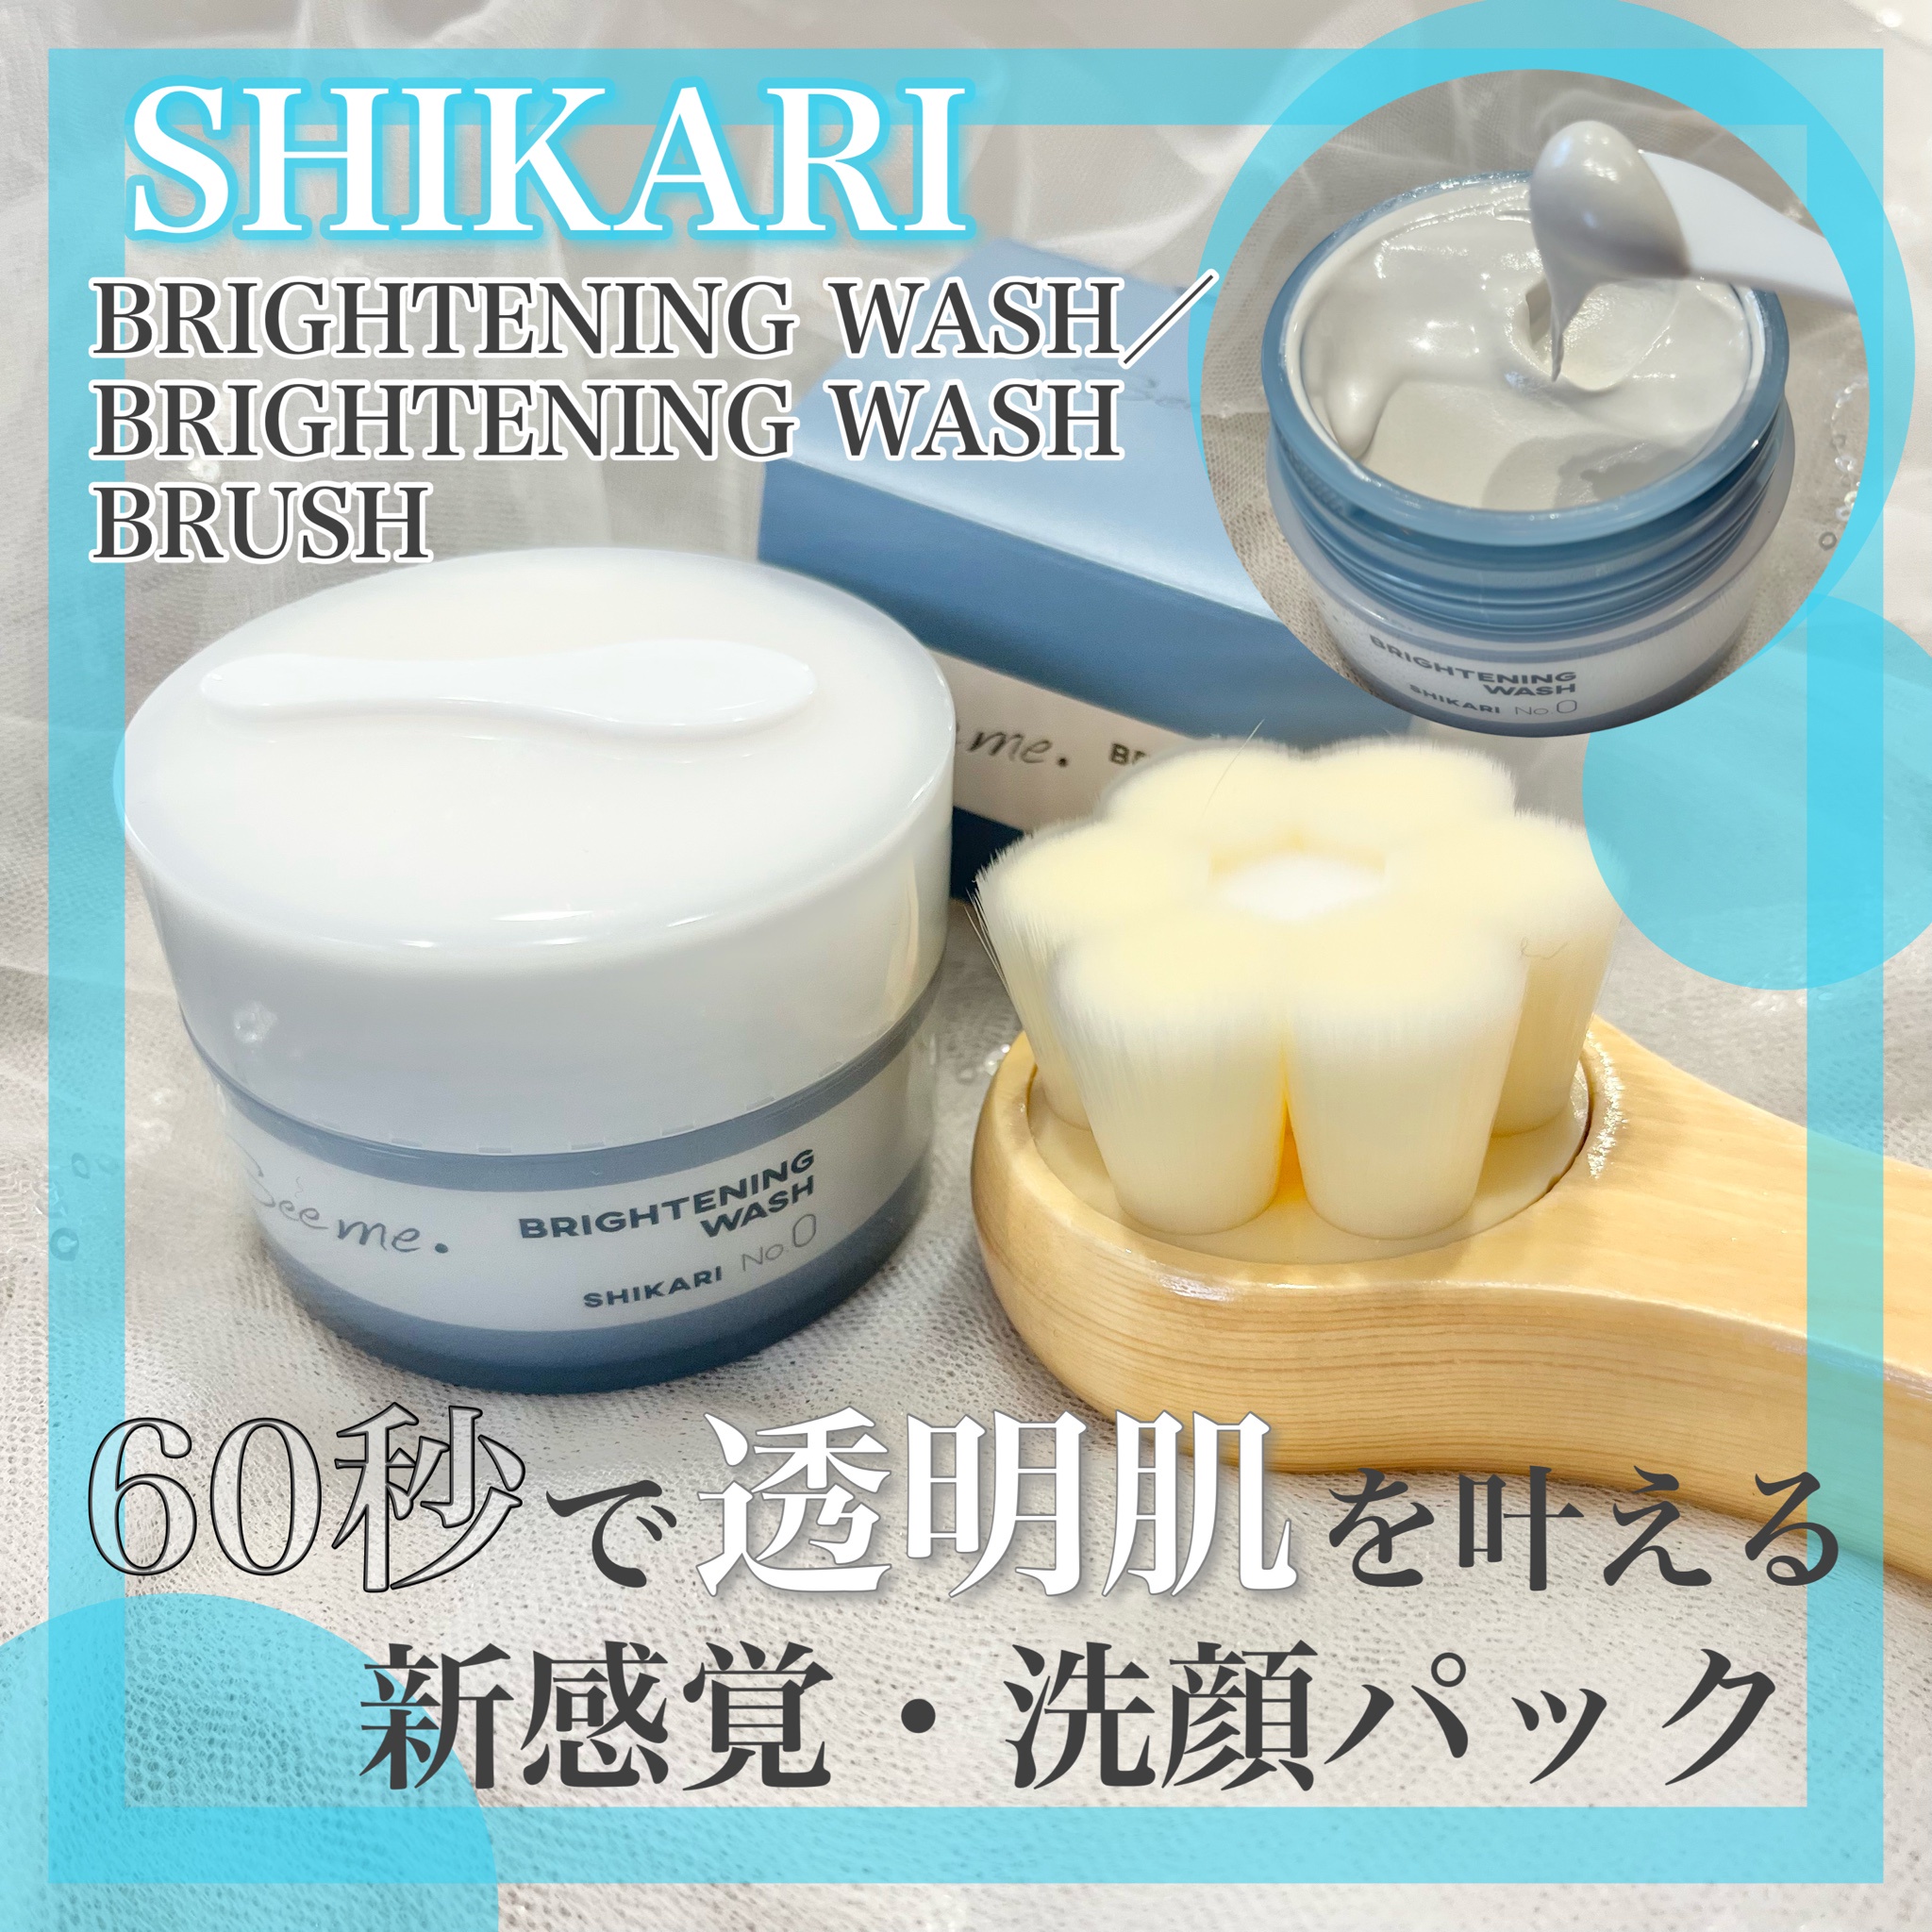 ブランド 新品 シカリ洗顔 SHIKARI BRIGHTENING WASH 通販